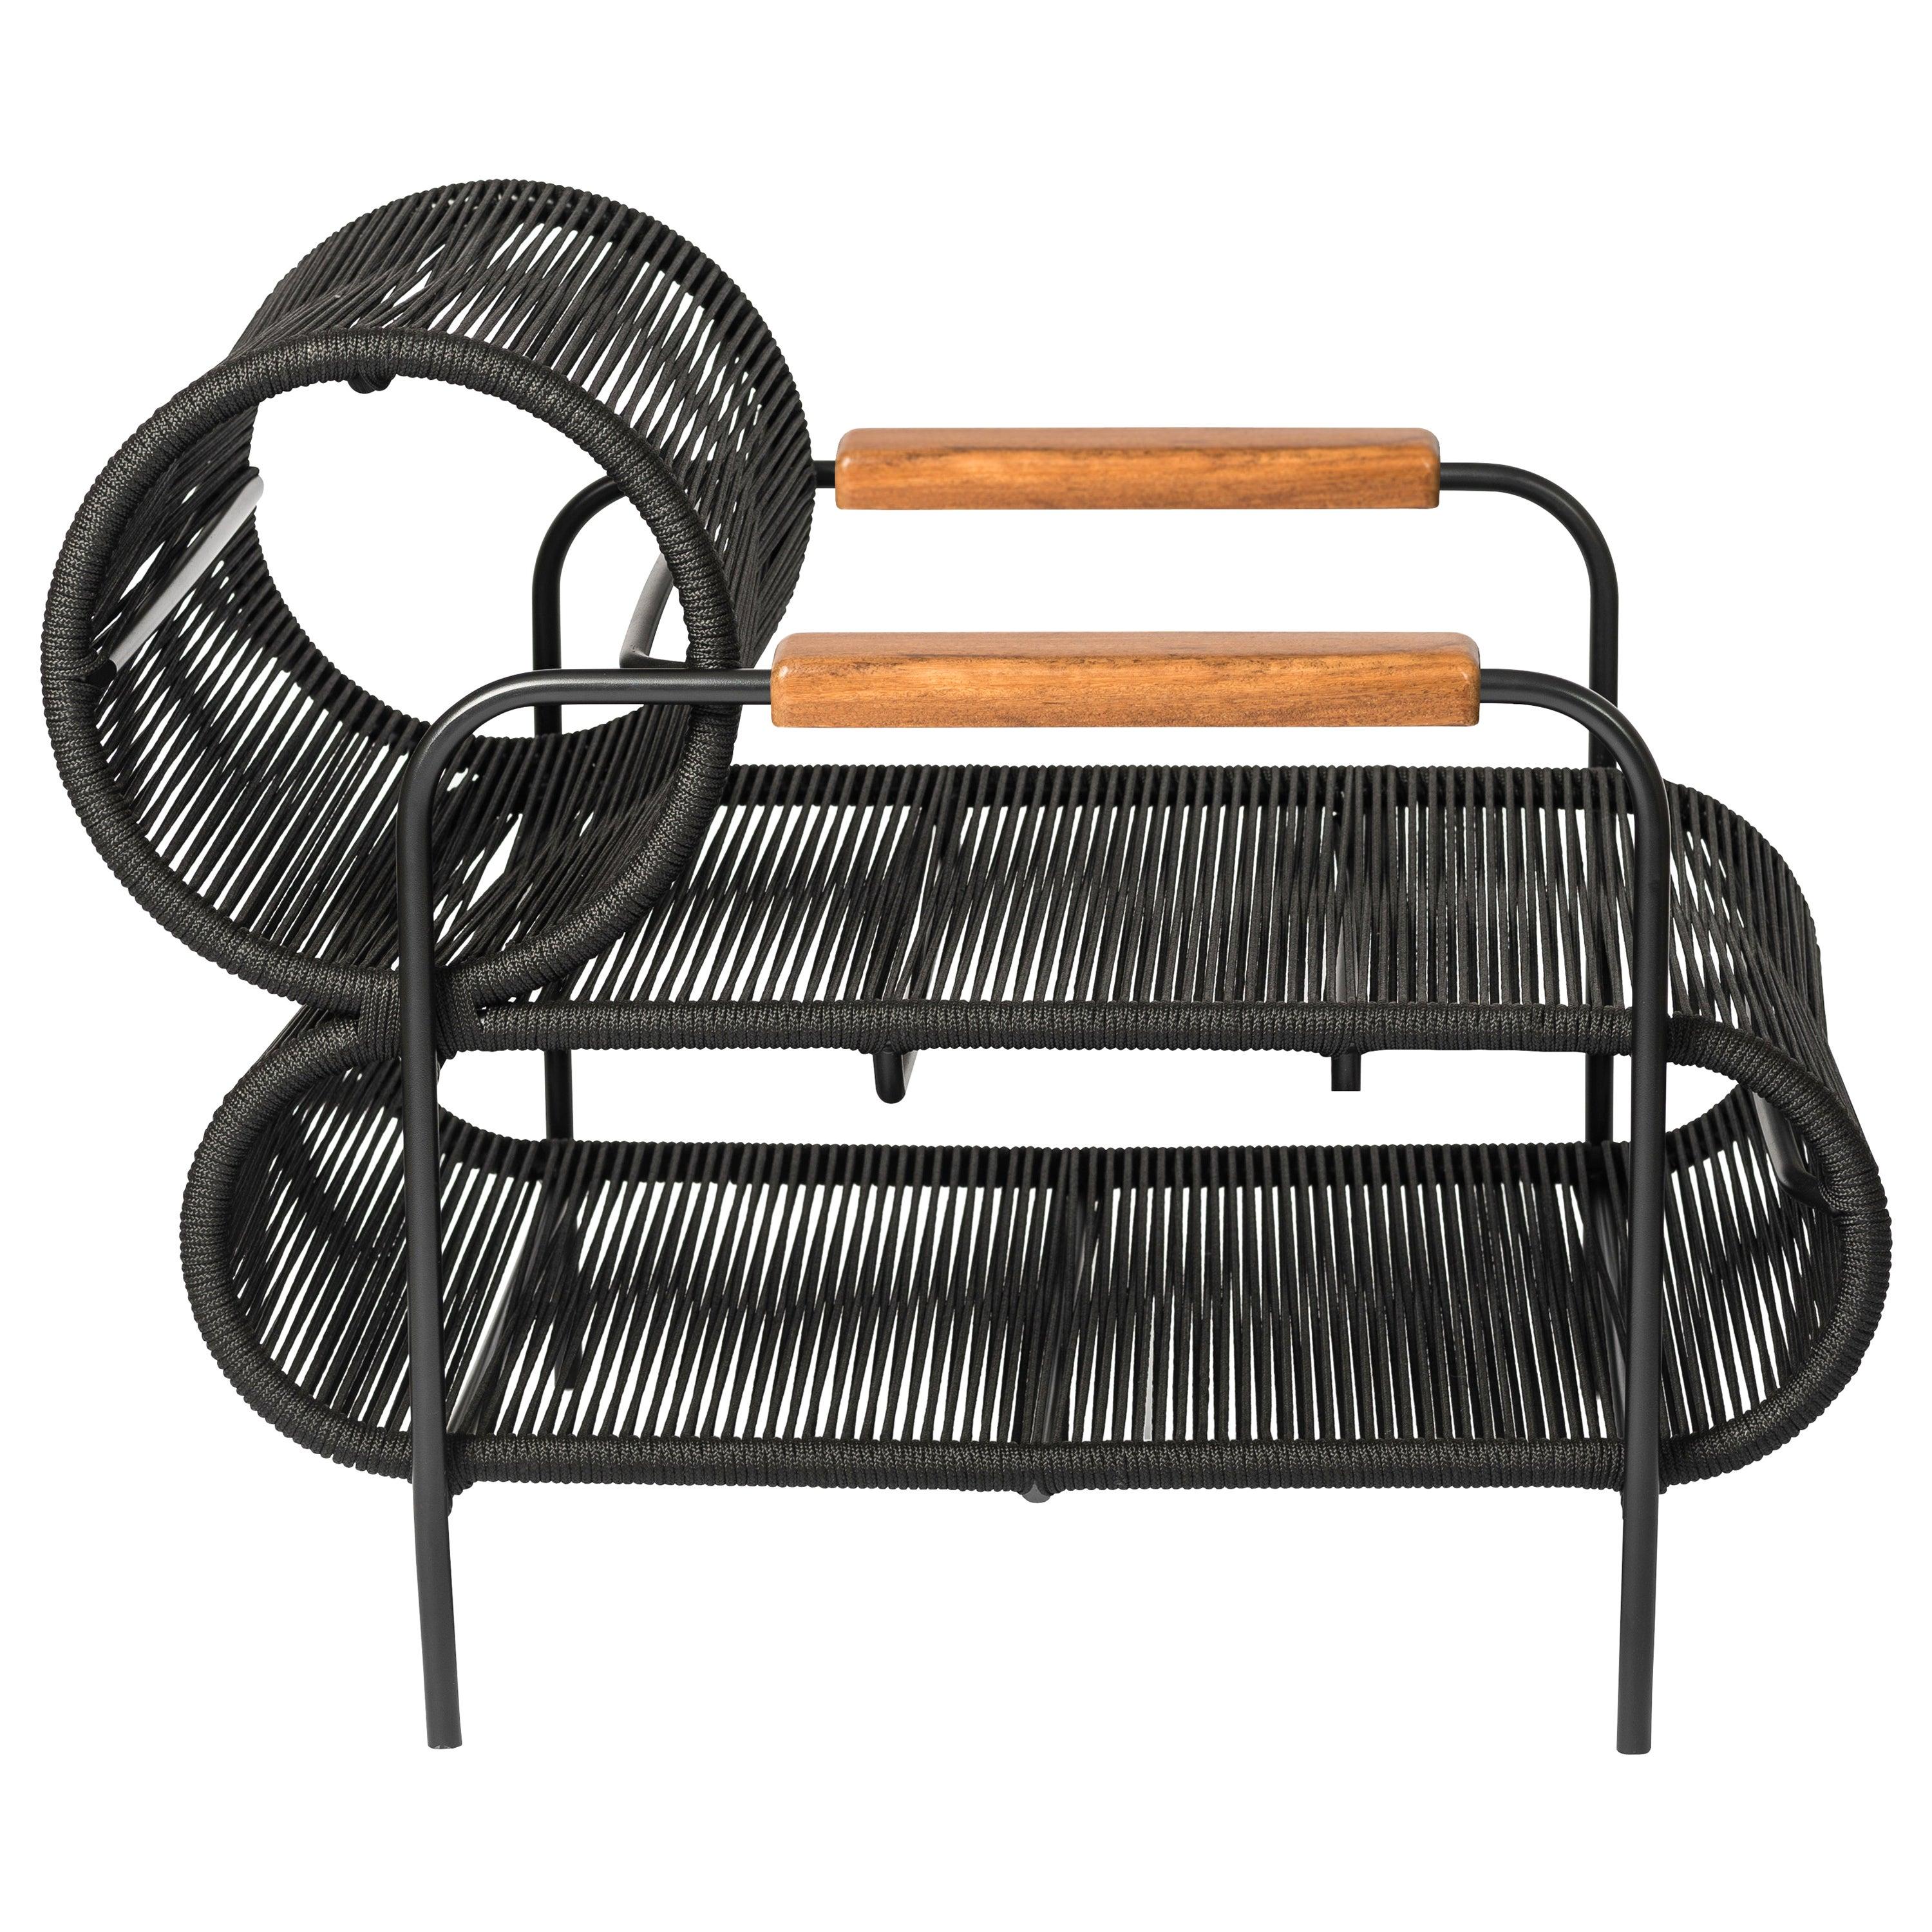 ELO Sessel Lounge chair In/Outdoor aus Metall, Seil und Wood Arm von Filipe Ramos